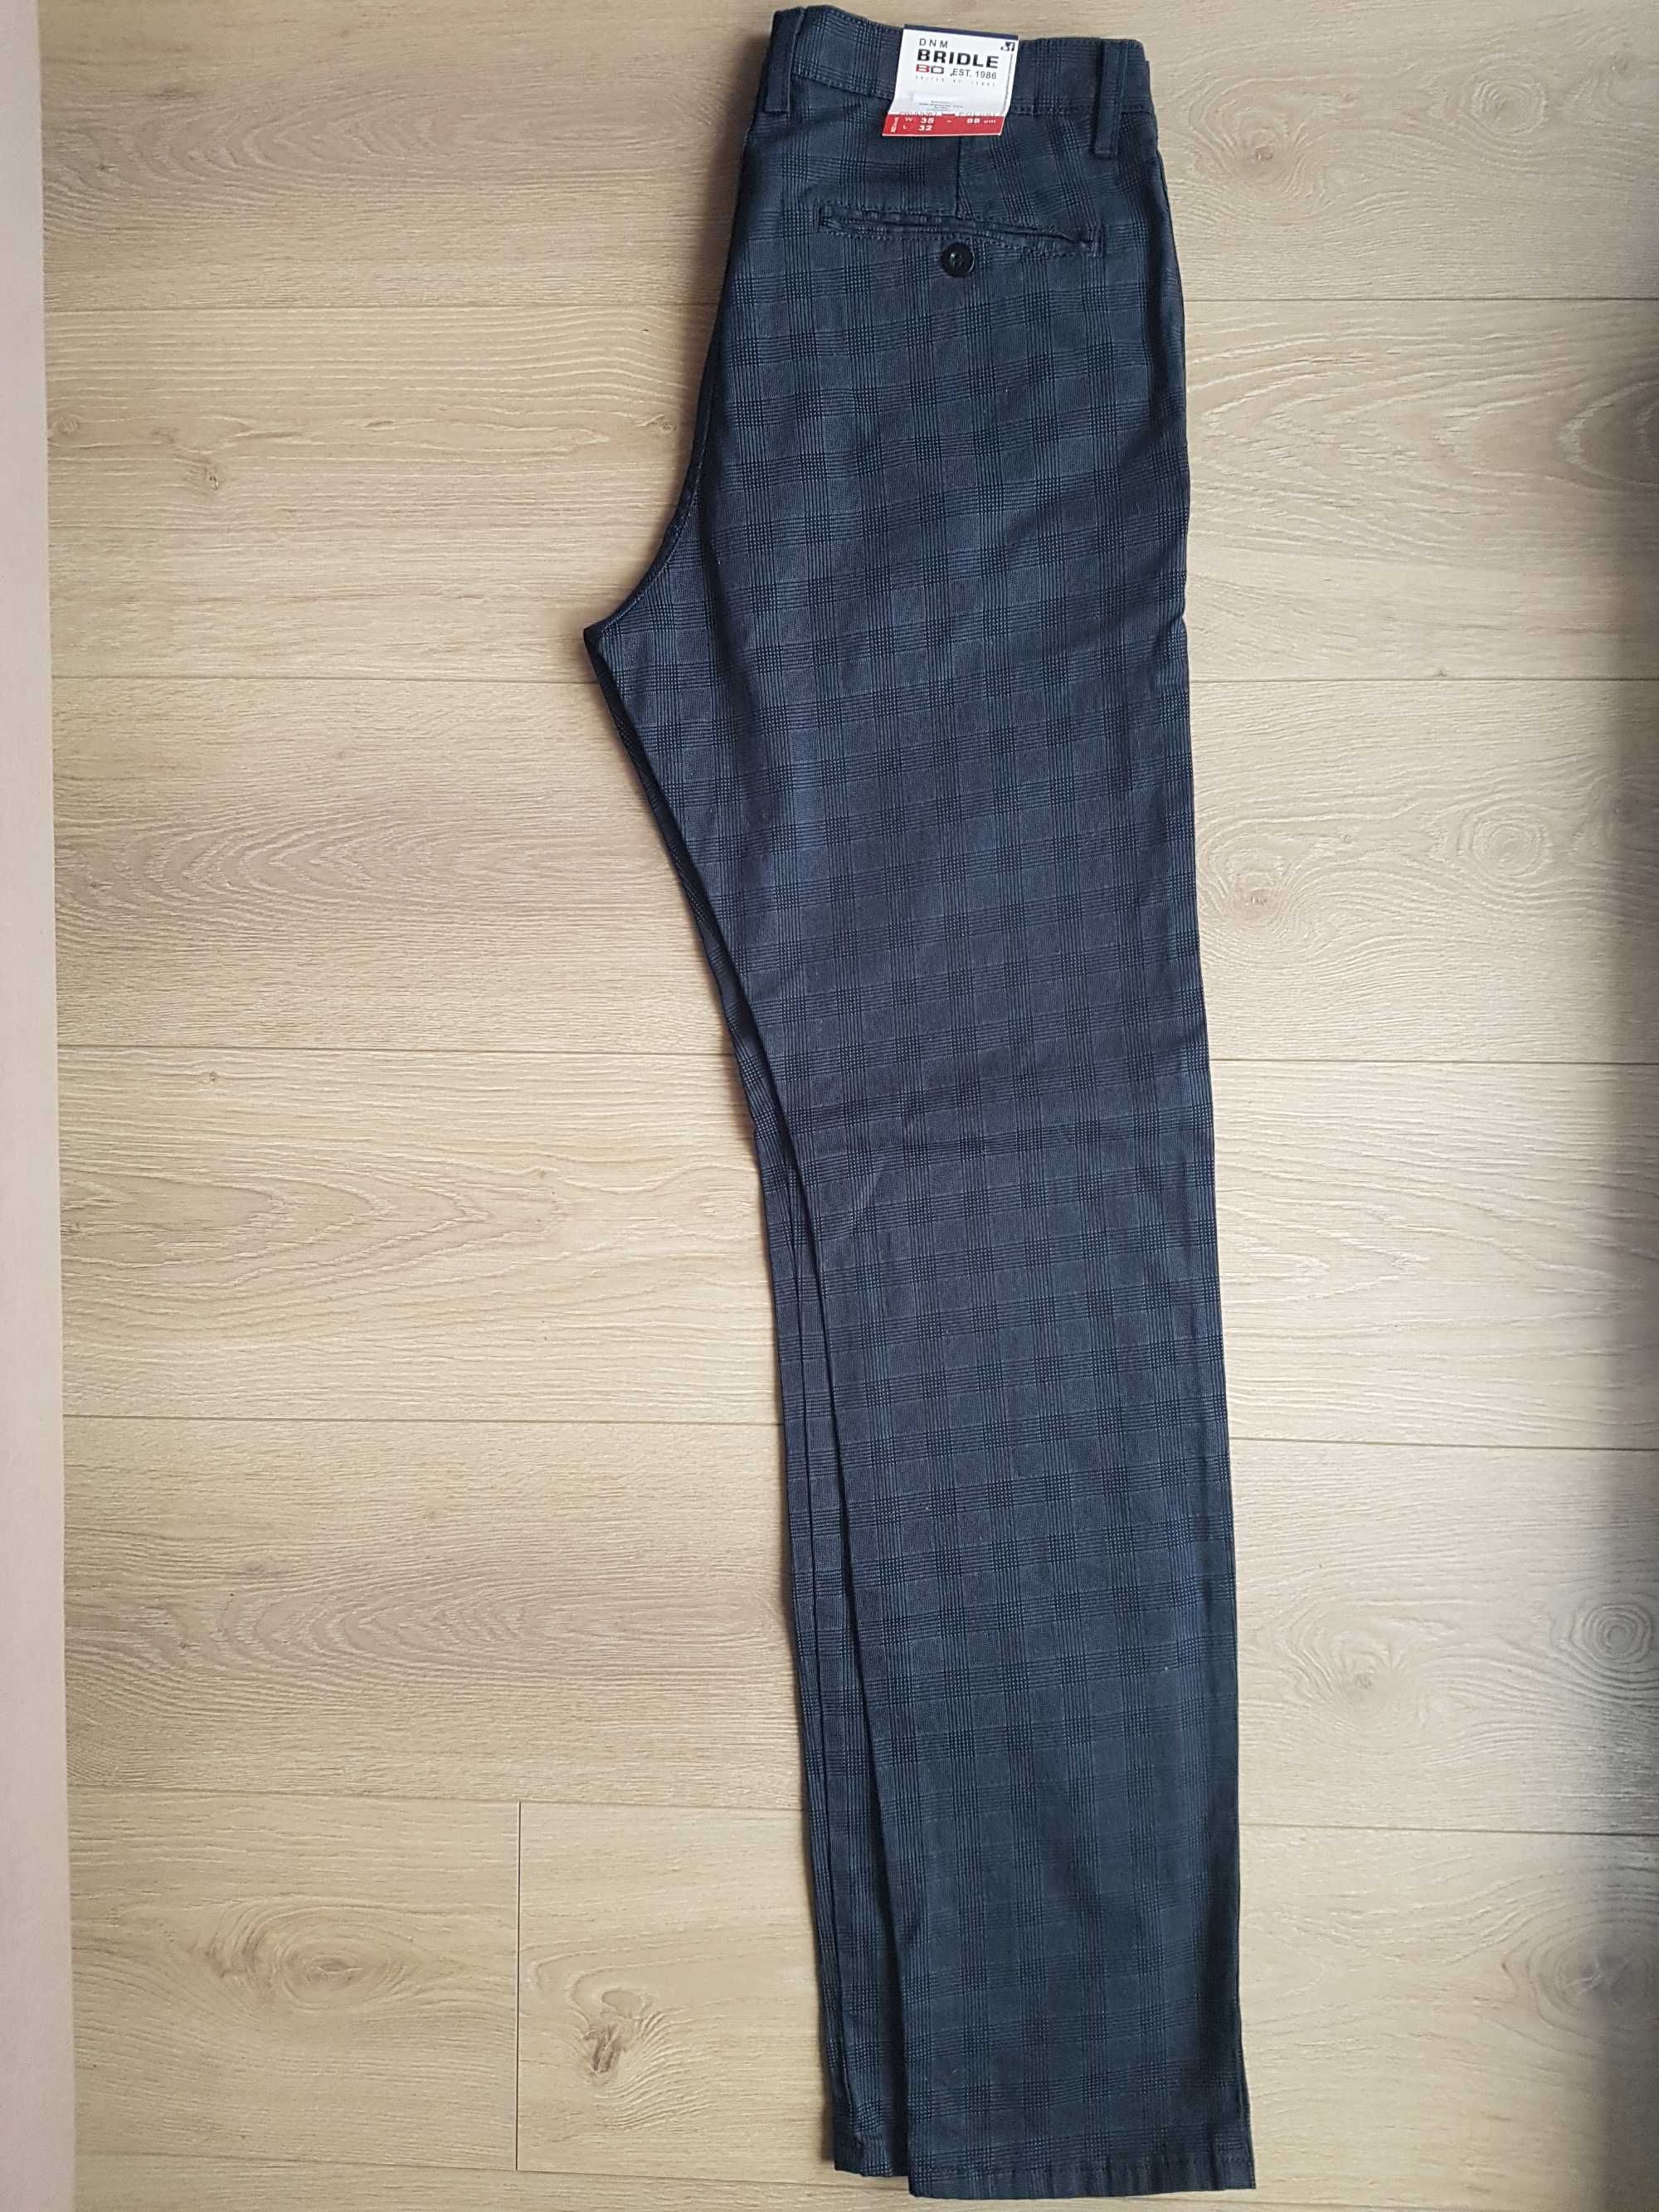 Spodnie bawełniane BRIDLE JEANS W35 L32 Salvador 211 slim